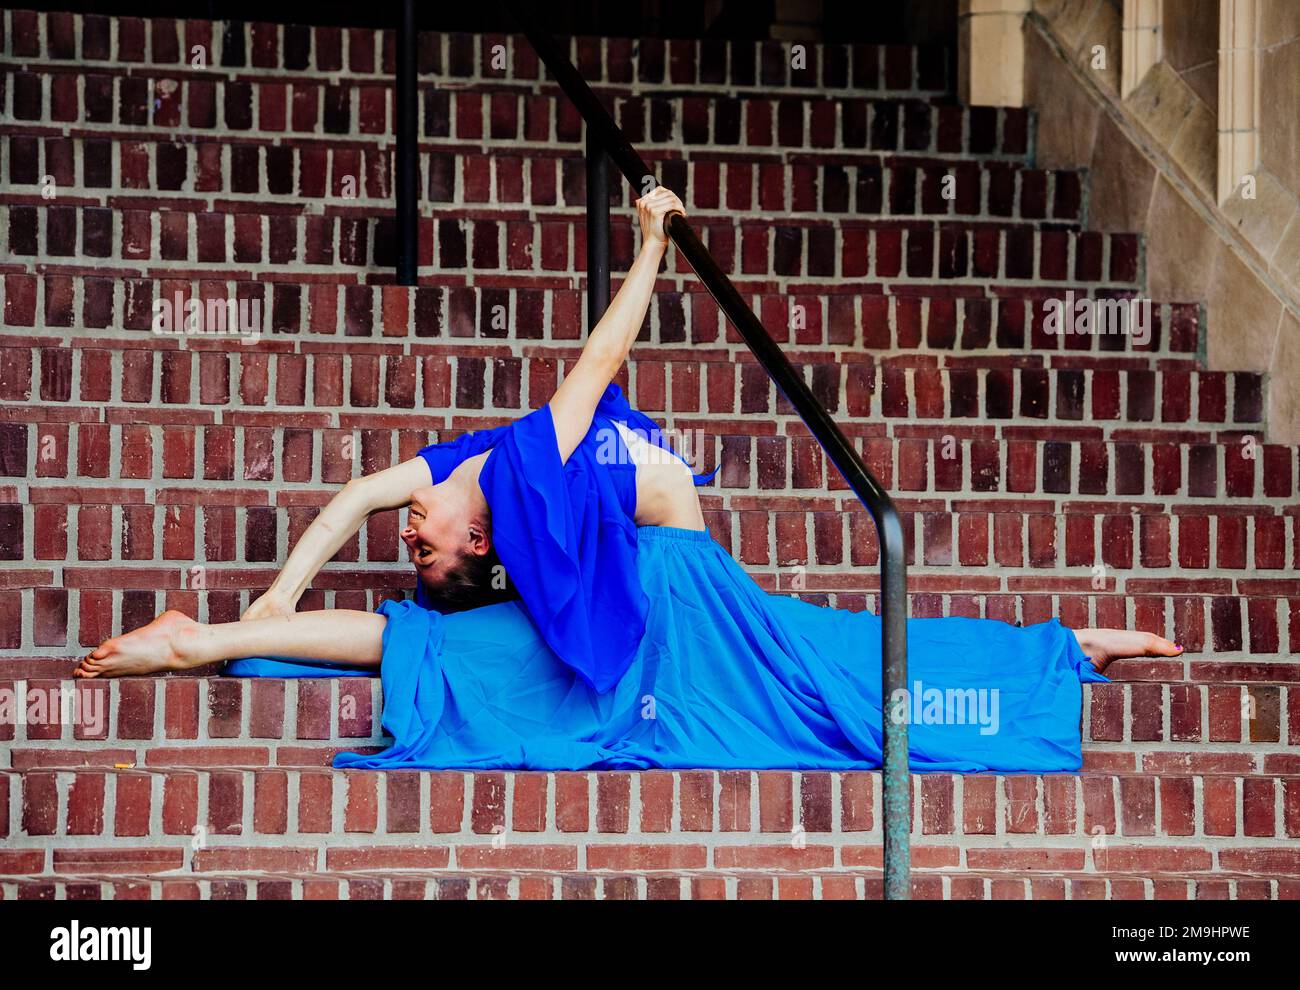 Acrobat en robe bleue s'étendant sur l'escalier, Université de Washington, Seattle, État de Washington, États-Unis Banque D'Images